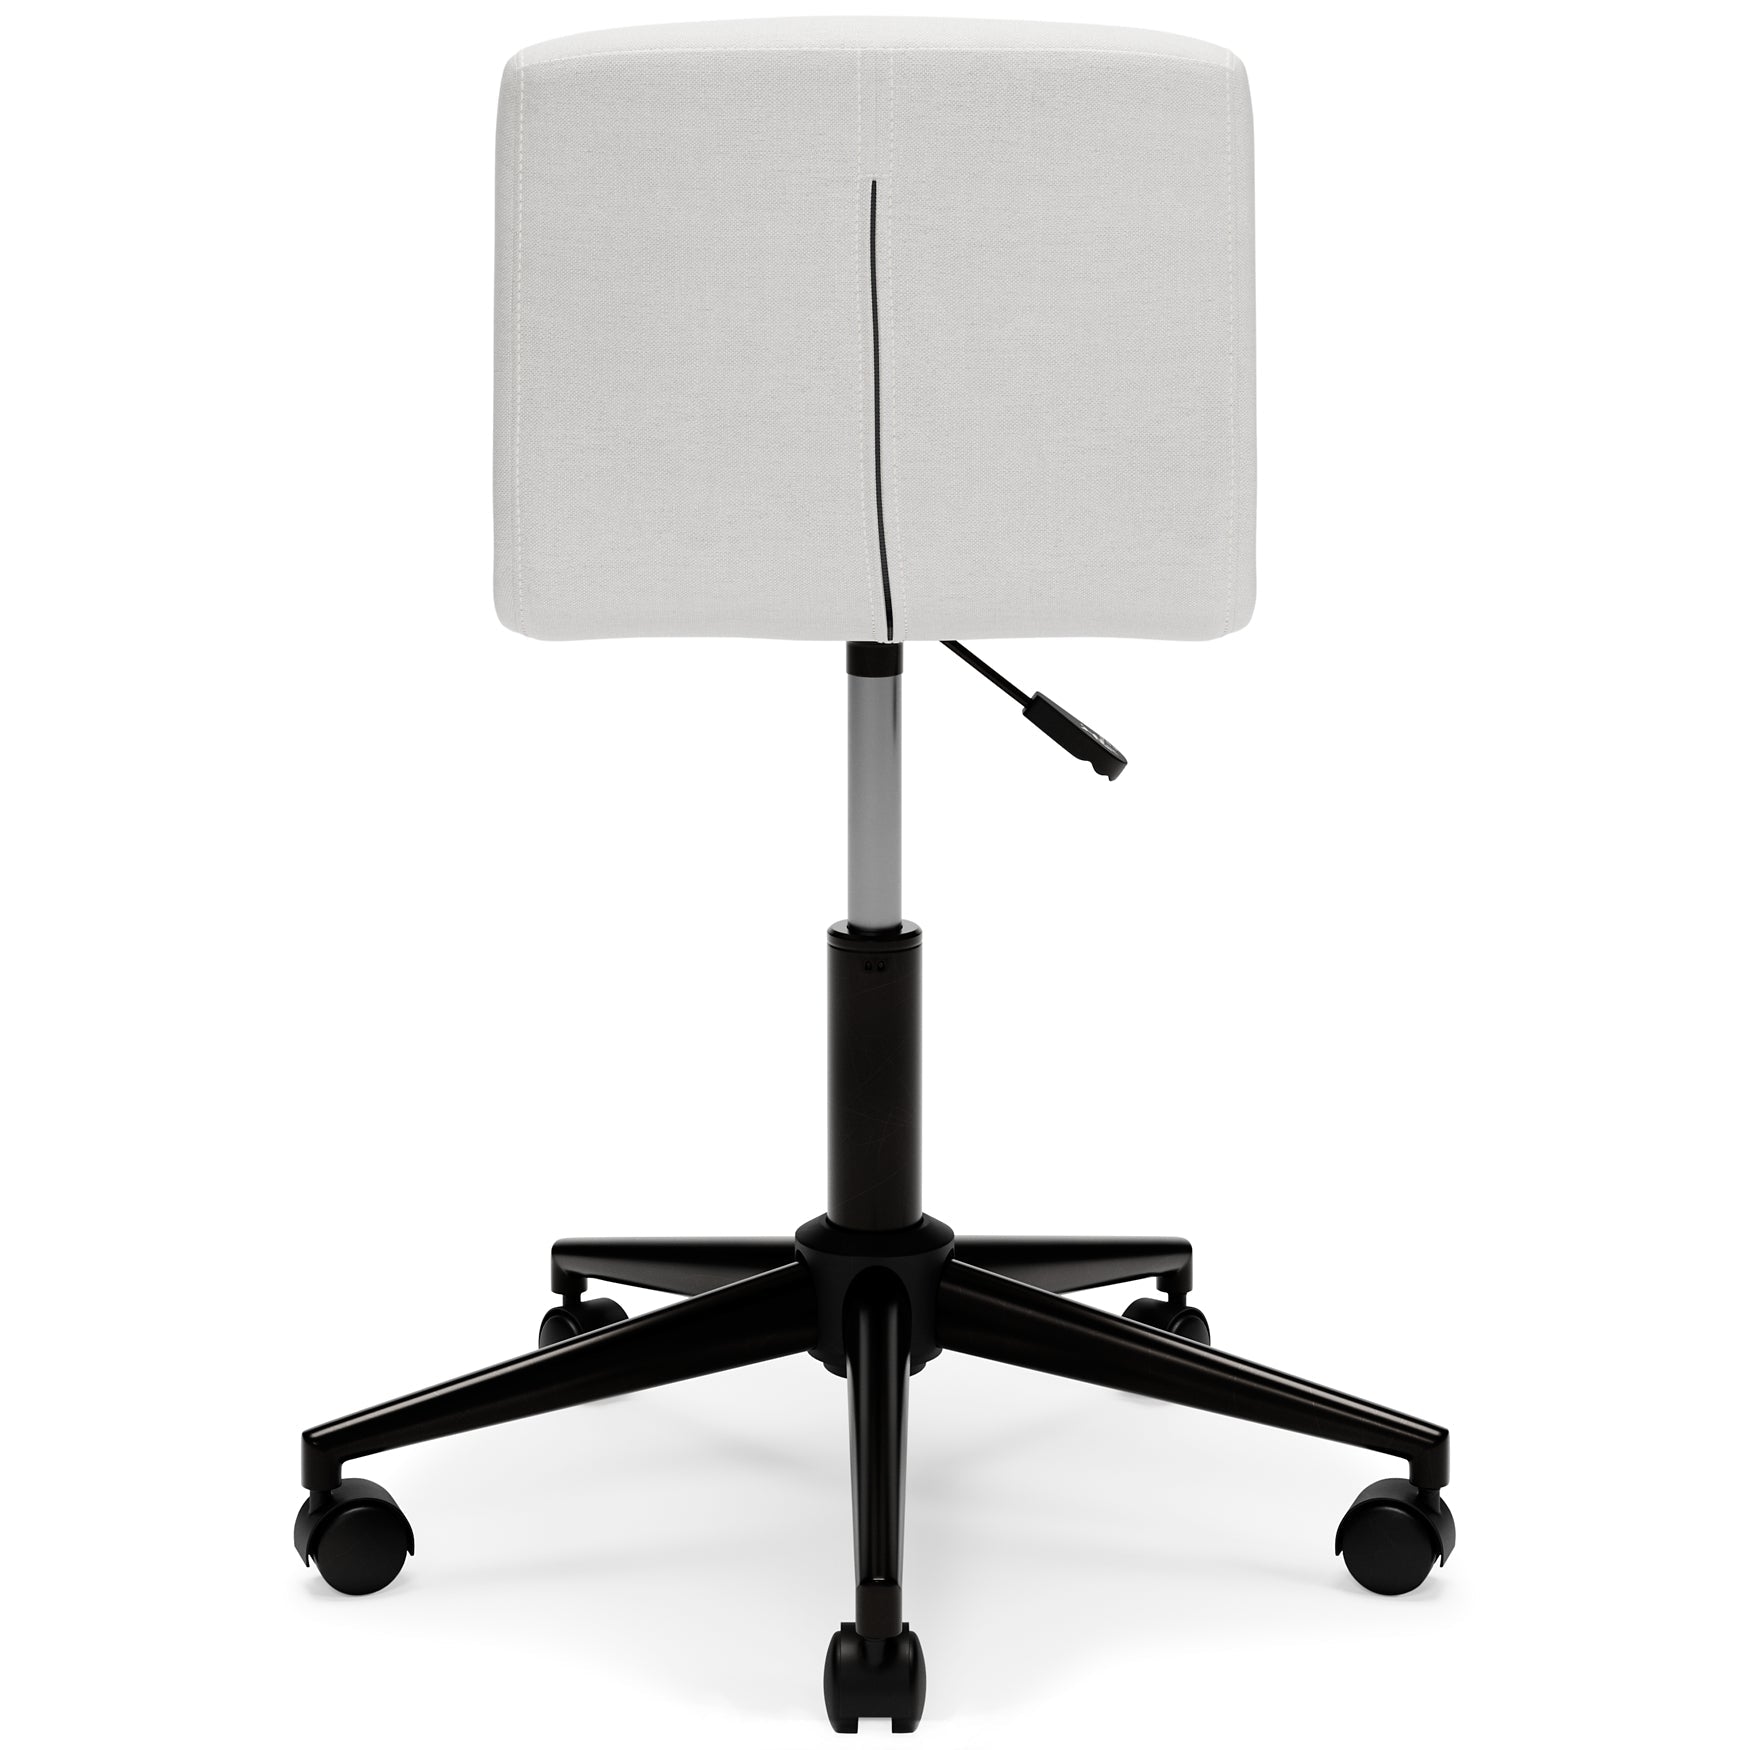 Beauenali Home Office Desk Chair (1/CN)